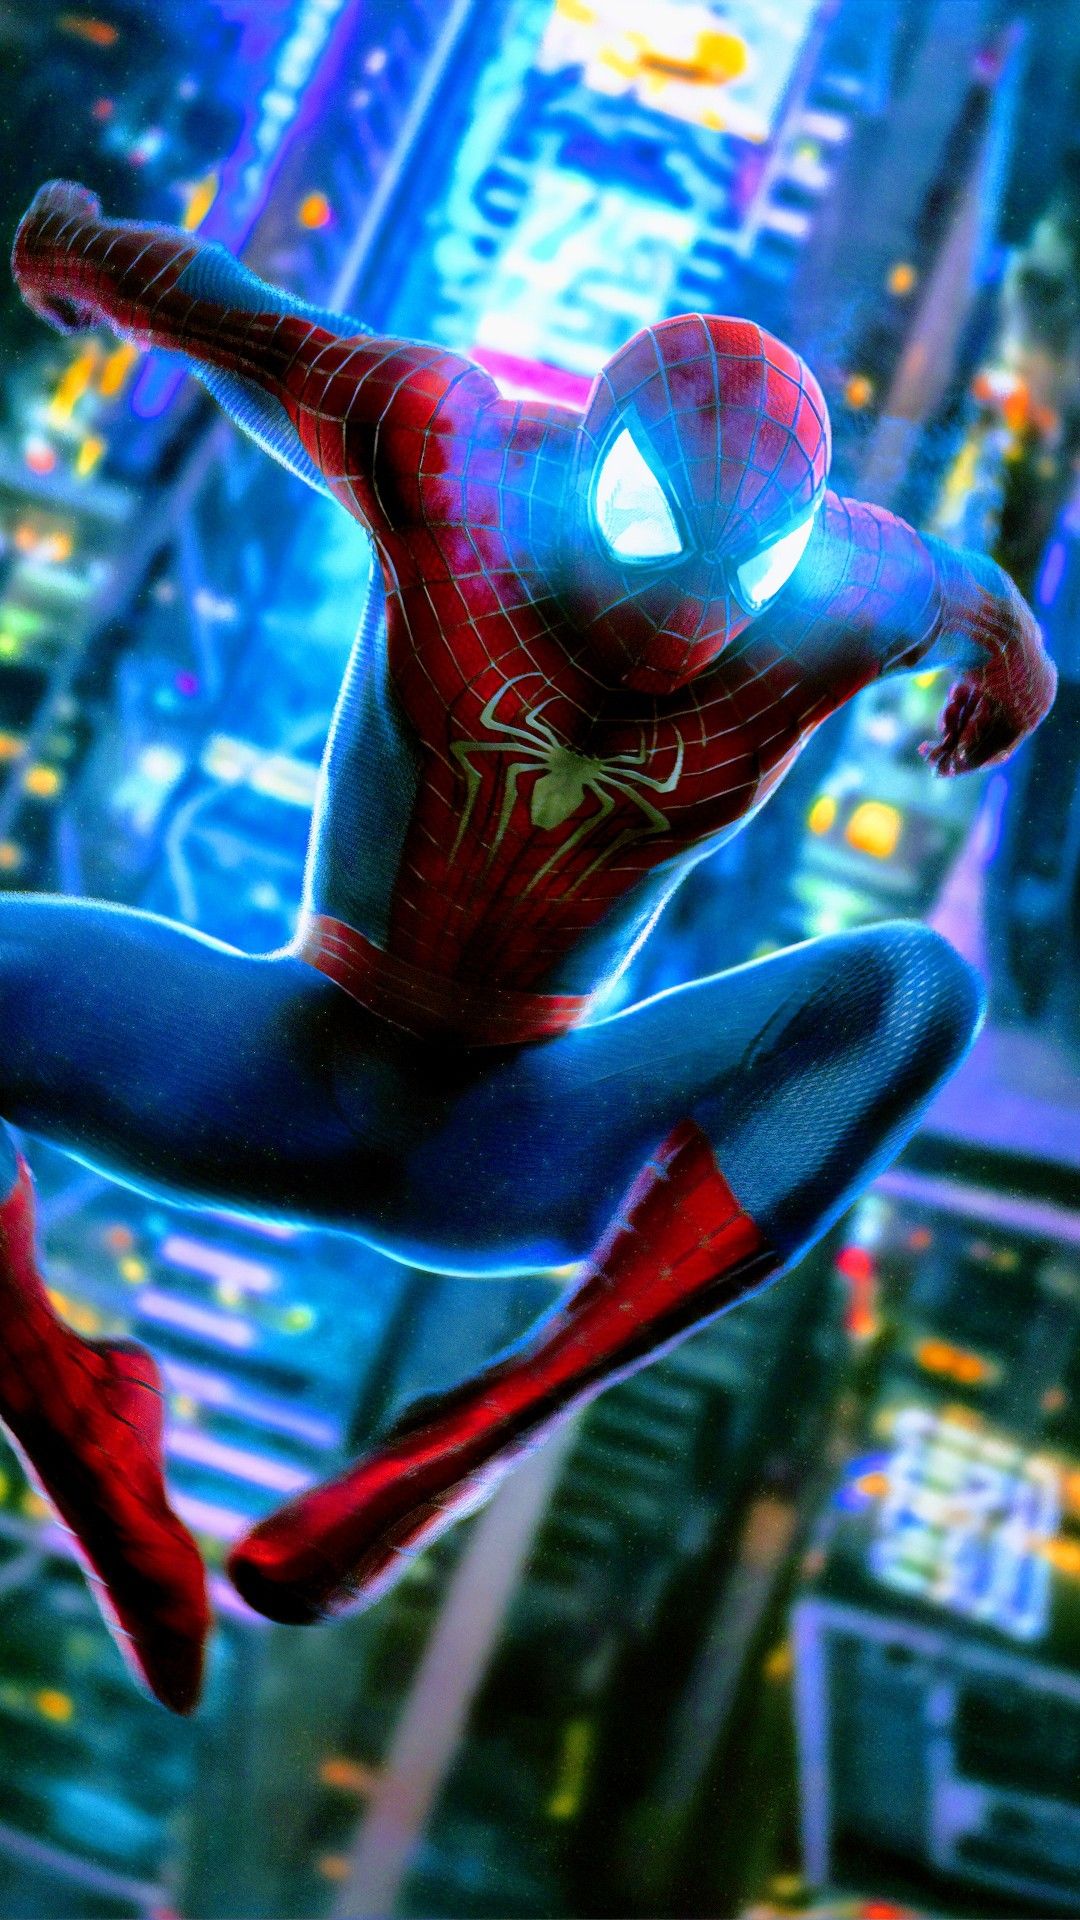 Spider Man. Amazing Spiderman, Spiderman, Spiderman Artwork